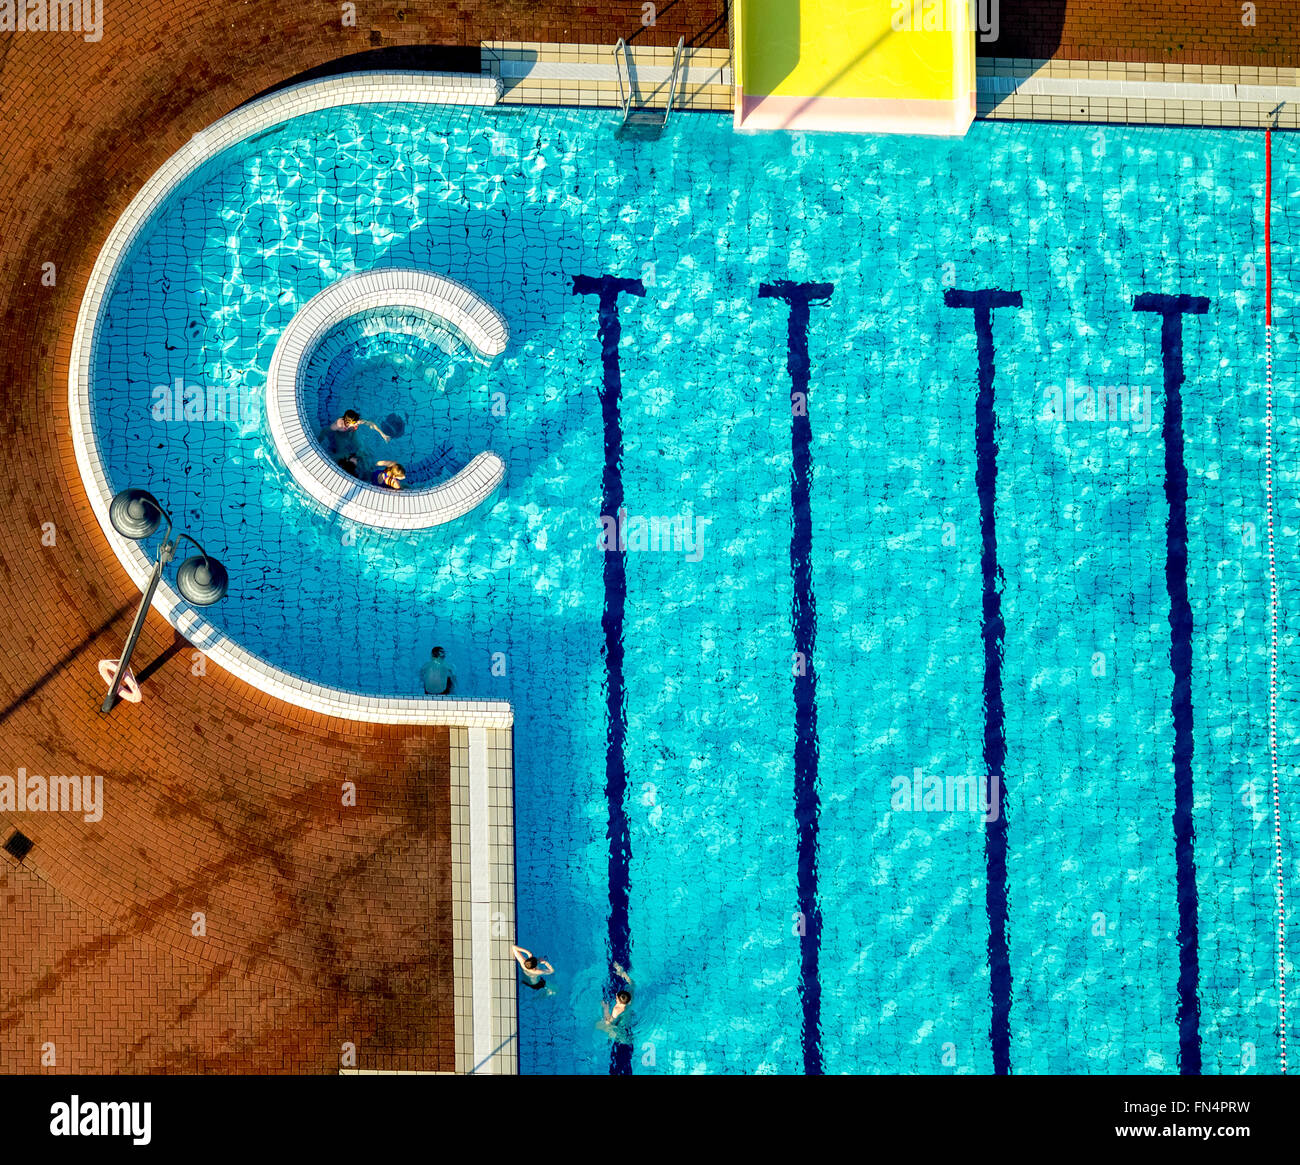 Vista aérea, Embricana u ocio. Sport GmbH, natación, piscina, piscina olímpica, Emmerich, región del Bajo Rin, Foto de stock